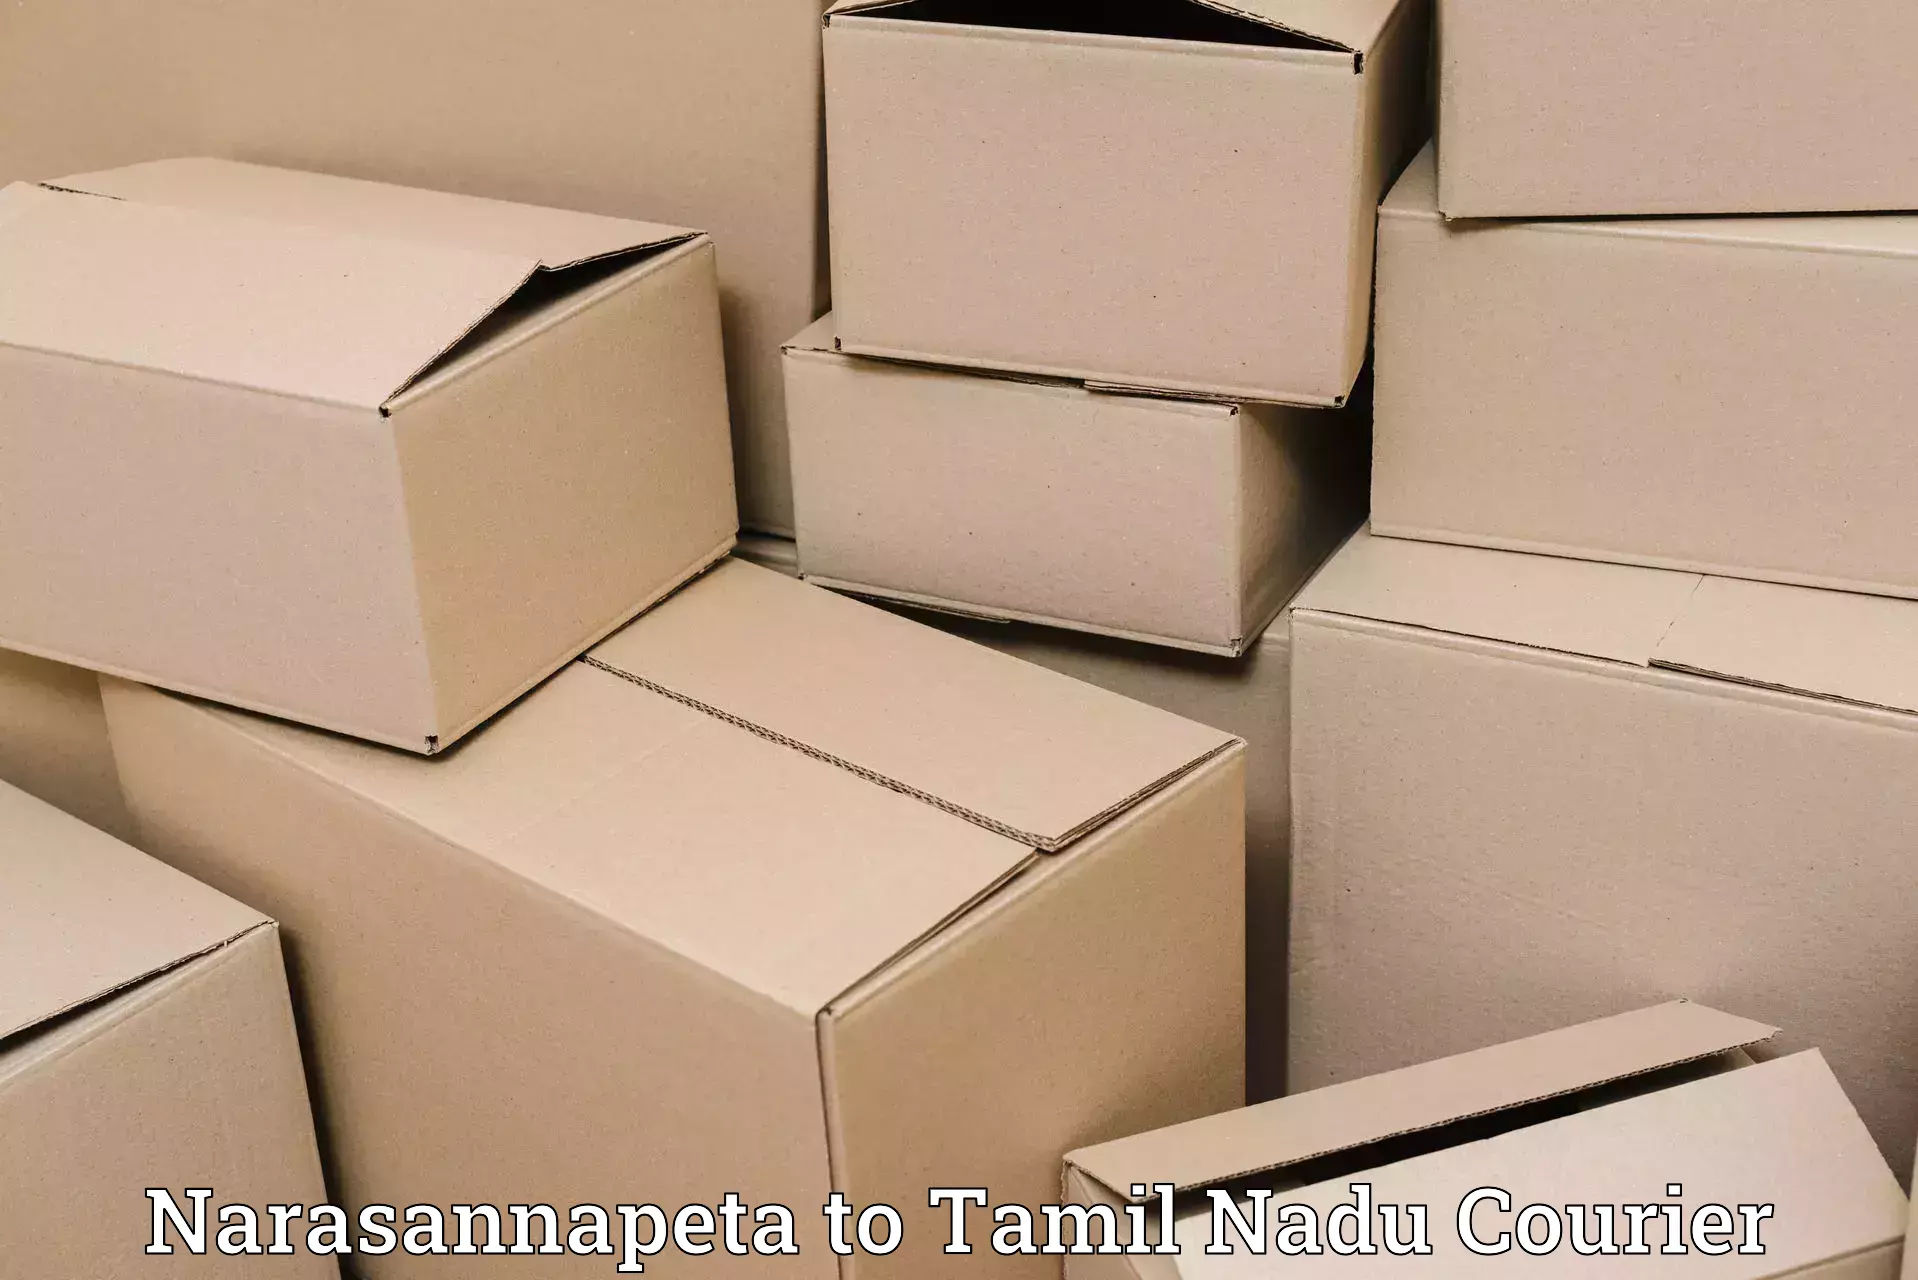 Simplified shipping solutions Narasannapeta to Periyakulam